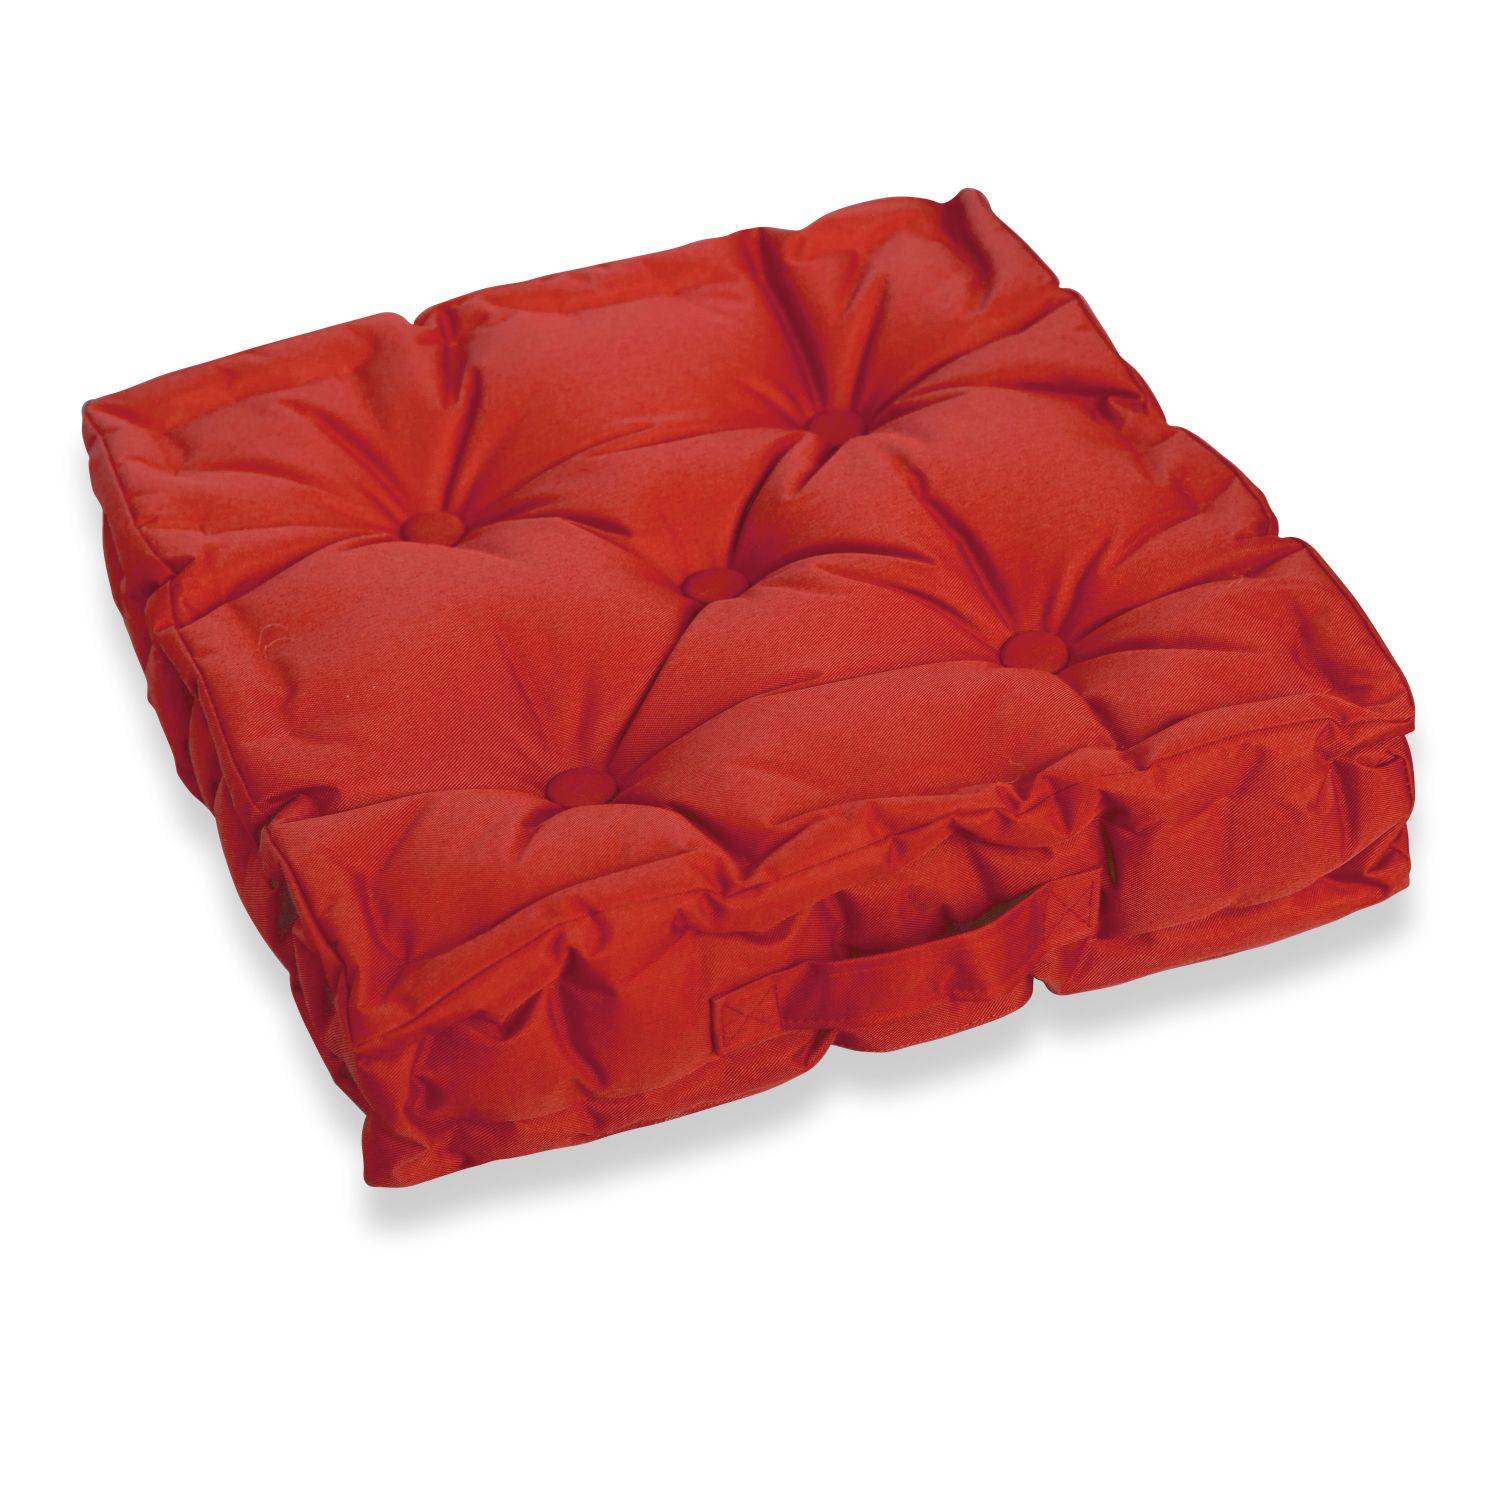 Coussin de sol matelassé – 40 x 40 cm – Brik (rouge), assise avec poignée de transport, boutons Photo1